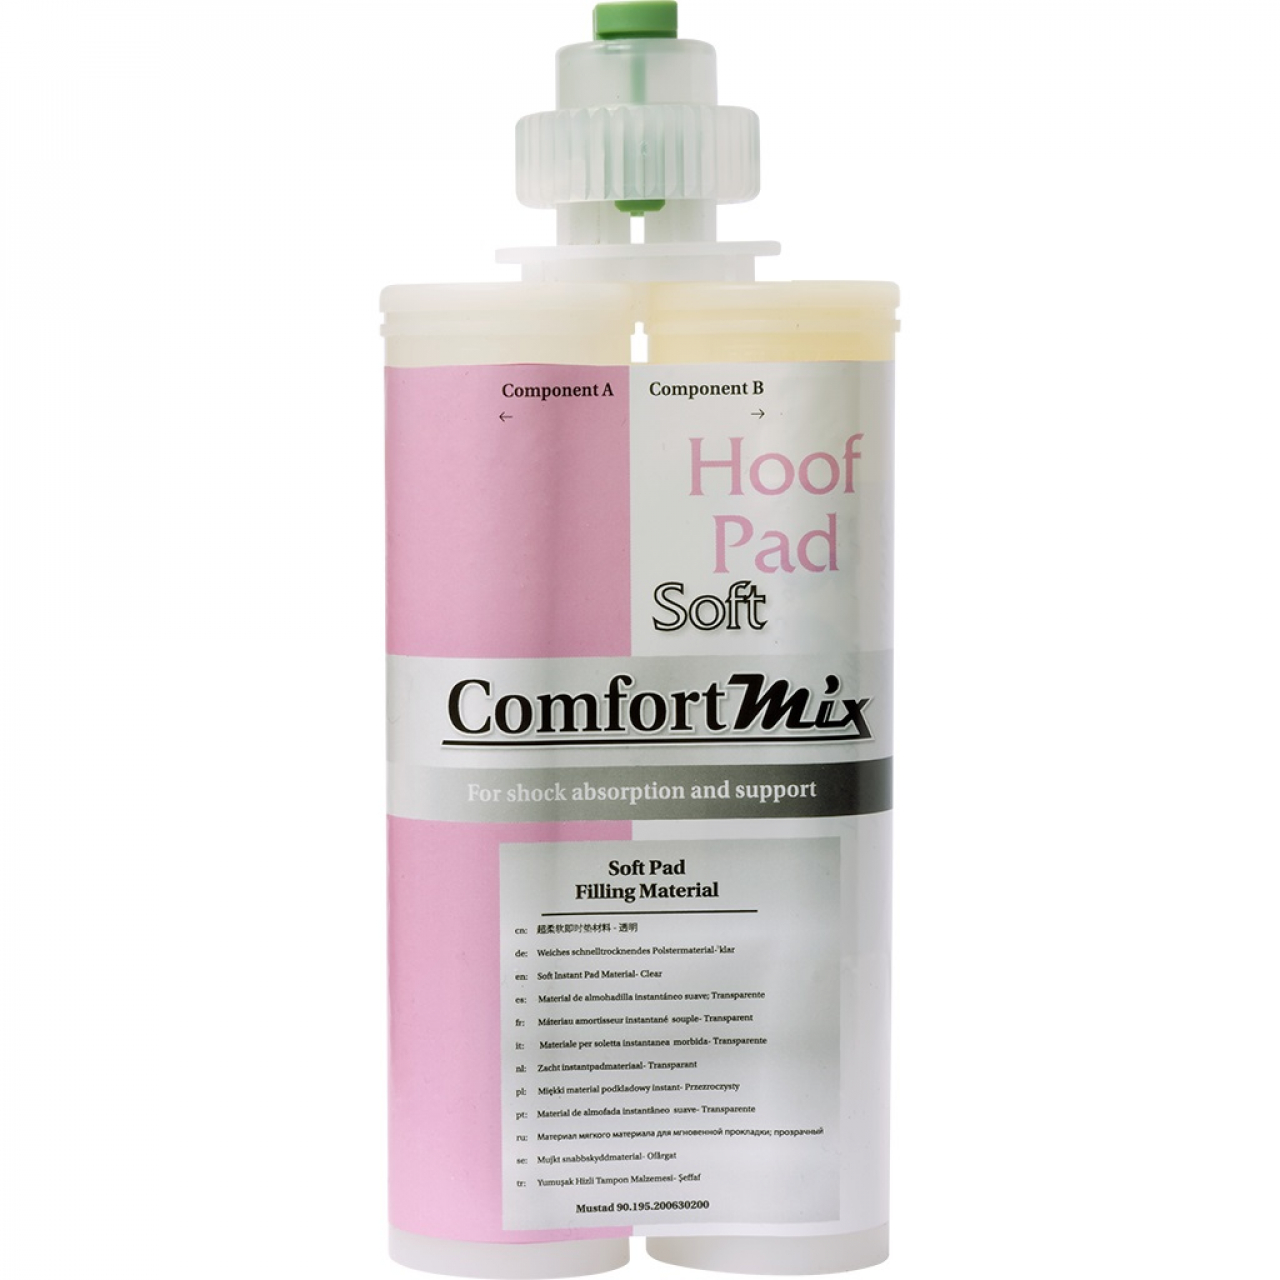 Comfort Mix Hoof Pad Soft